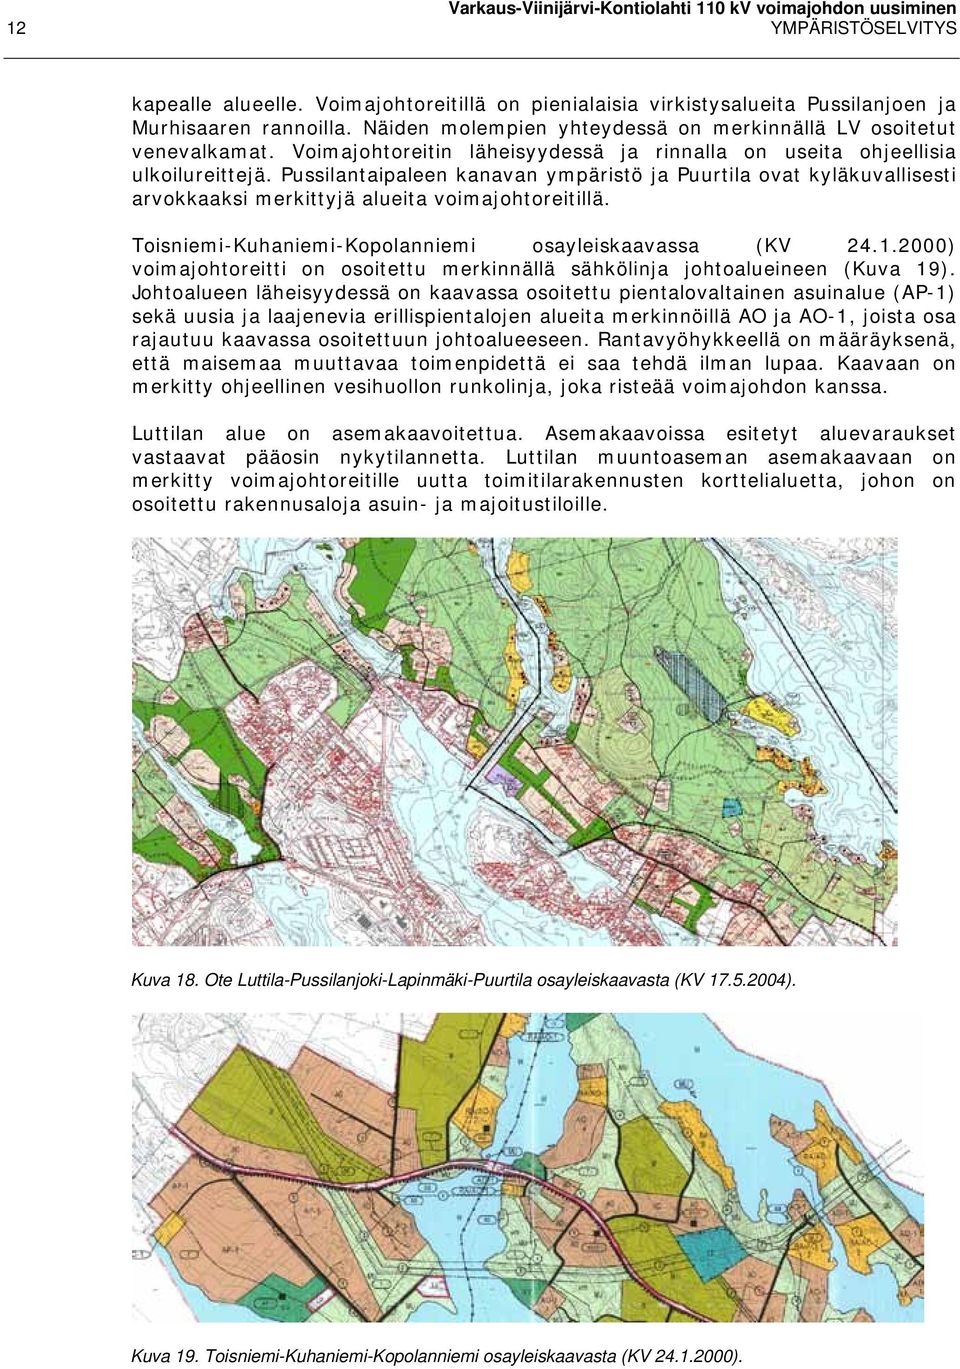 Pussilantaipaleen kanavan ympäristö ja Puurtila ovat kyläkuvallisesti arvokkaaksi merkittyjä alueita voimajohtoreitillä. Toisniemi-Kuhaniemi-Kopolanniemi osayleiskaavassa (KV 24.1.